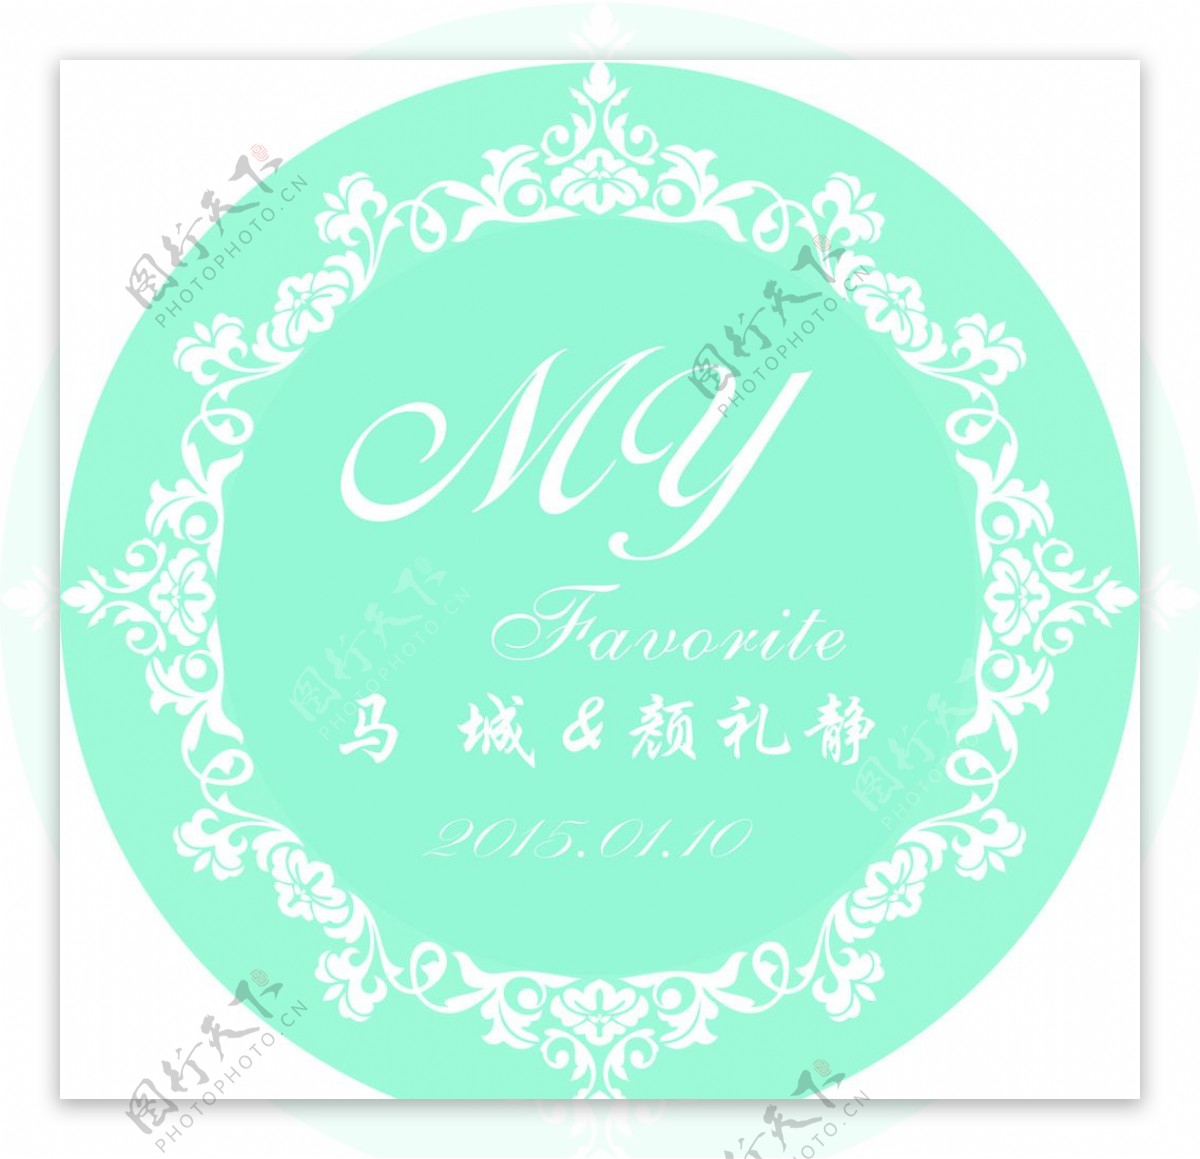 婚礼花车logo图片